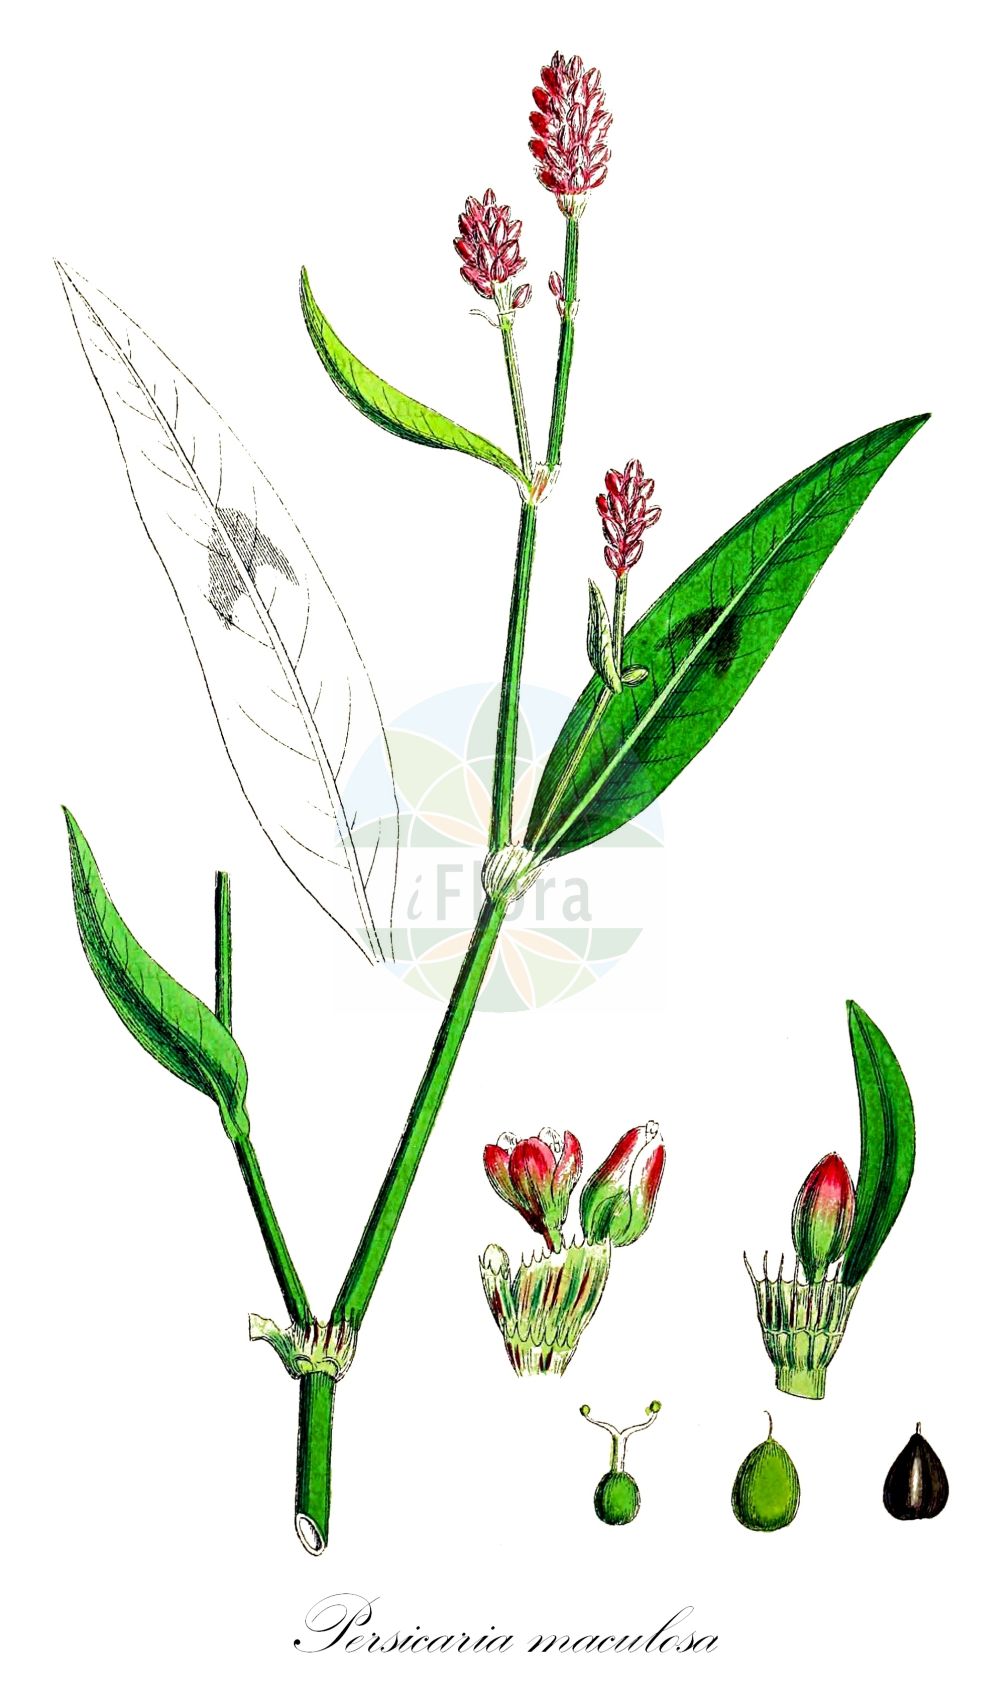 Historische Abbildung von Persicaria maculosa (Floh-Knöterich - Redshank). Das Bild zeigt Blatt, Bluete, Frucht und Same. ---- Historical Drawing of Persicaria maculosa (Floh-Knöterich - Redshank). The image is showing leaf, flower, fruit and seed.(Persicaria maculosa,Floh-Knöterich,Redshank,Persicaria maculosa,Persicaria ruderalis,Persicaria vulgaris,Polygonum biforme,Polygonum persicaria,Polygonum ruderale,Floh-Knoeterich,Redshank,Ladysthumb,Spotted Ladysthumb,Persicaria,Small Water-pepper,Red-leg,Persicaria,Knöterich,Knotgrass,Polygonaceae,Knöterichgewächse,Knotgrass family,Blatt,Bluete,Frucht,Same,leaf,flower,fruit,seed,Sowerby (1790-1813))